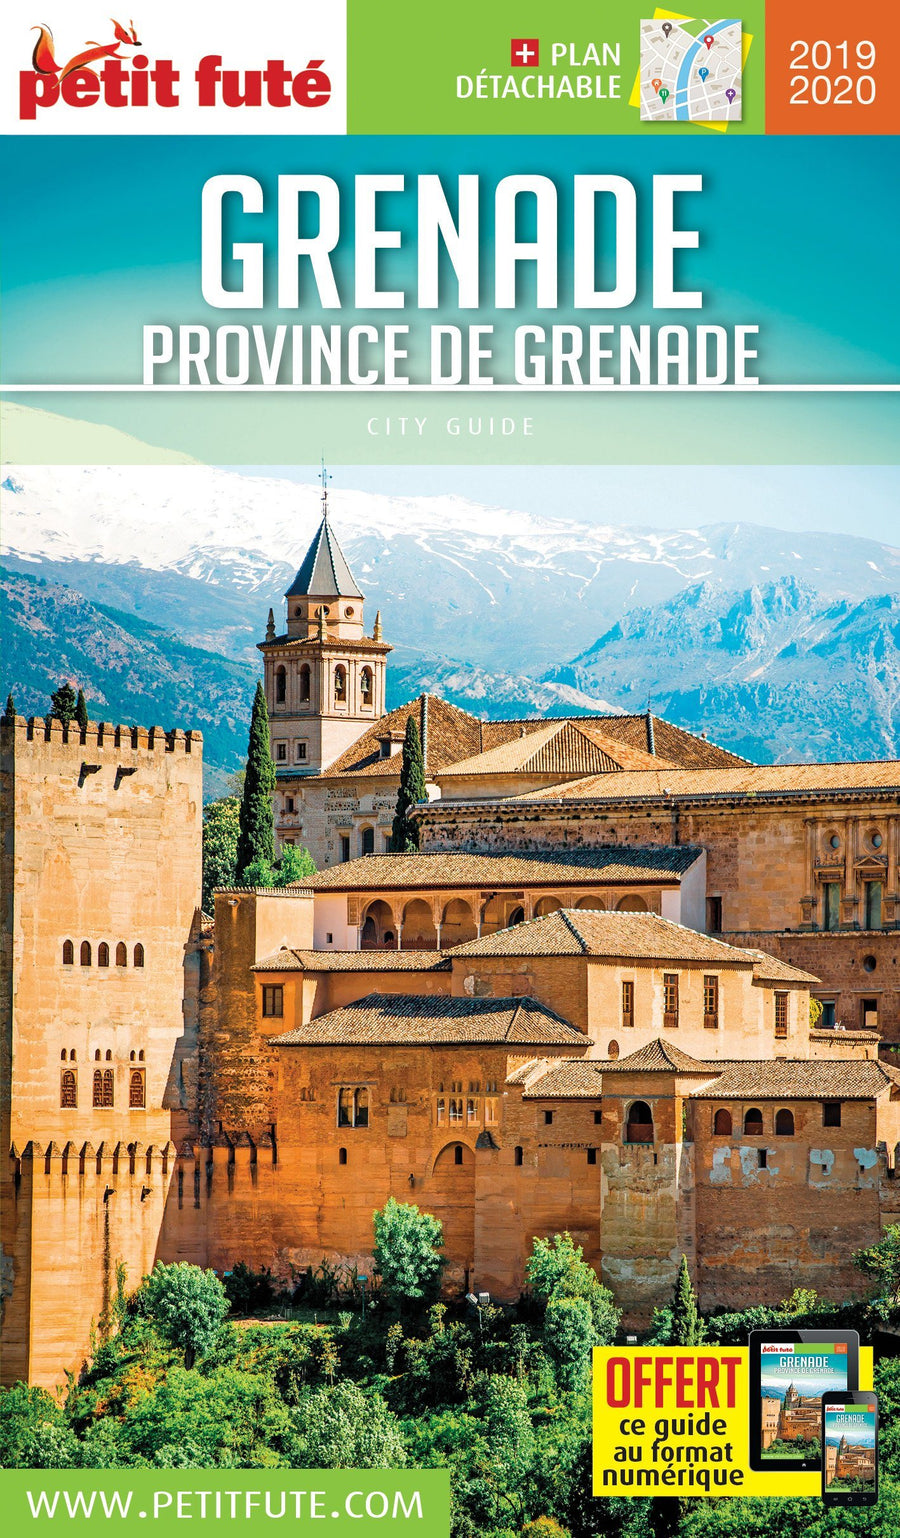 Guide de voyage - Grenade, province de grenade 2019/20 | Petit Futé guide de voyage Petit Futé 